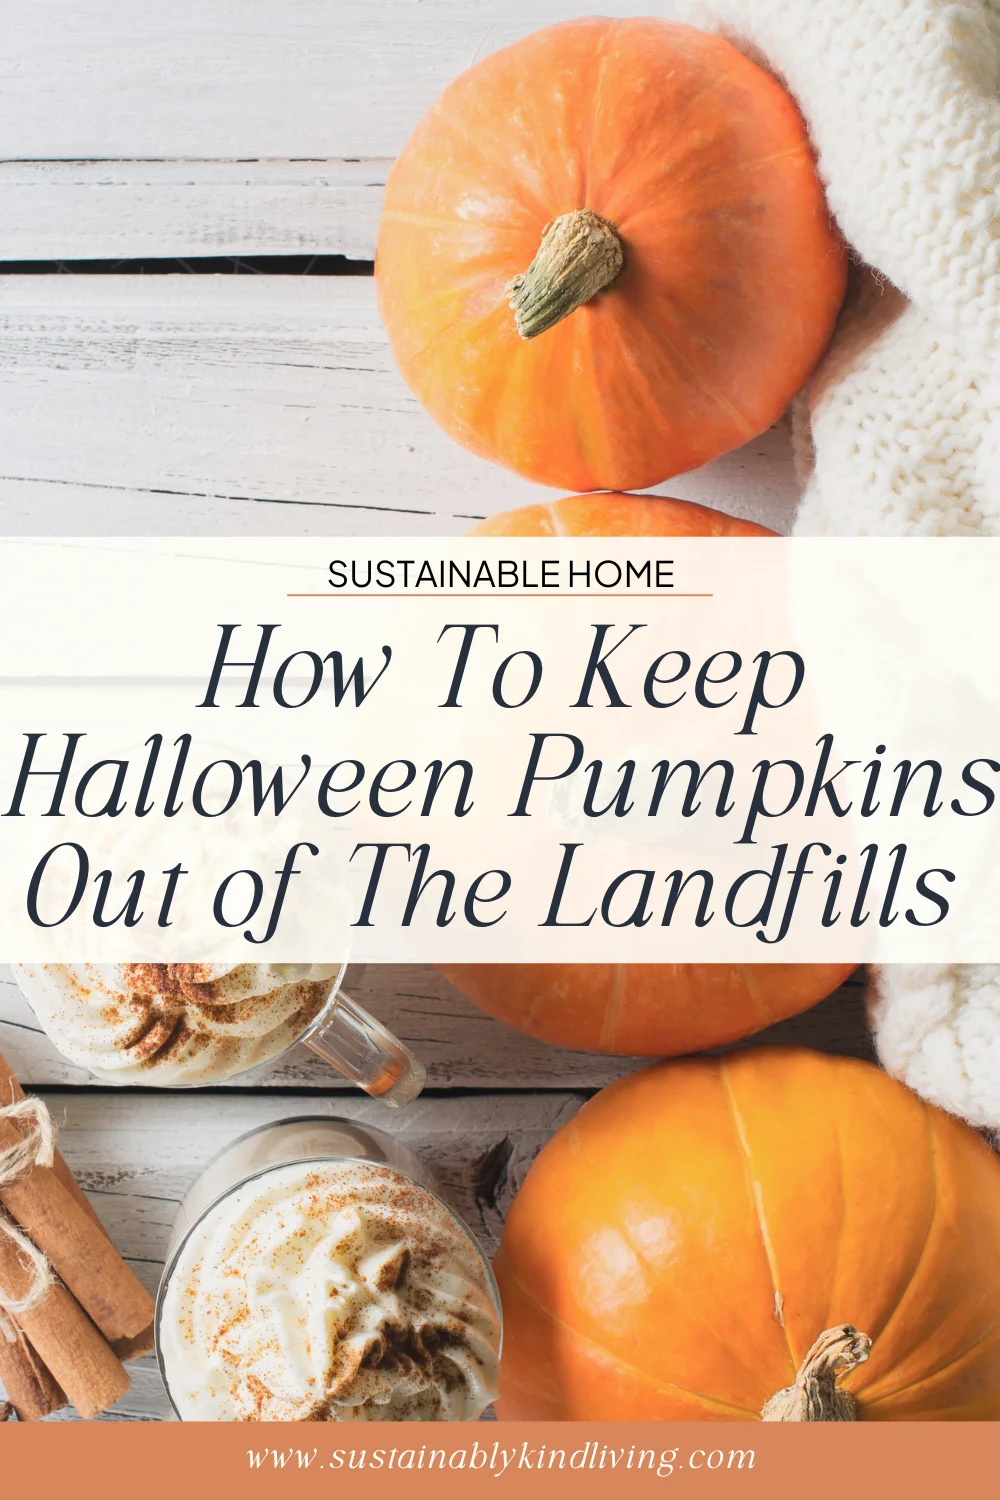 Alternatives to Landfills for Pumpkins